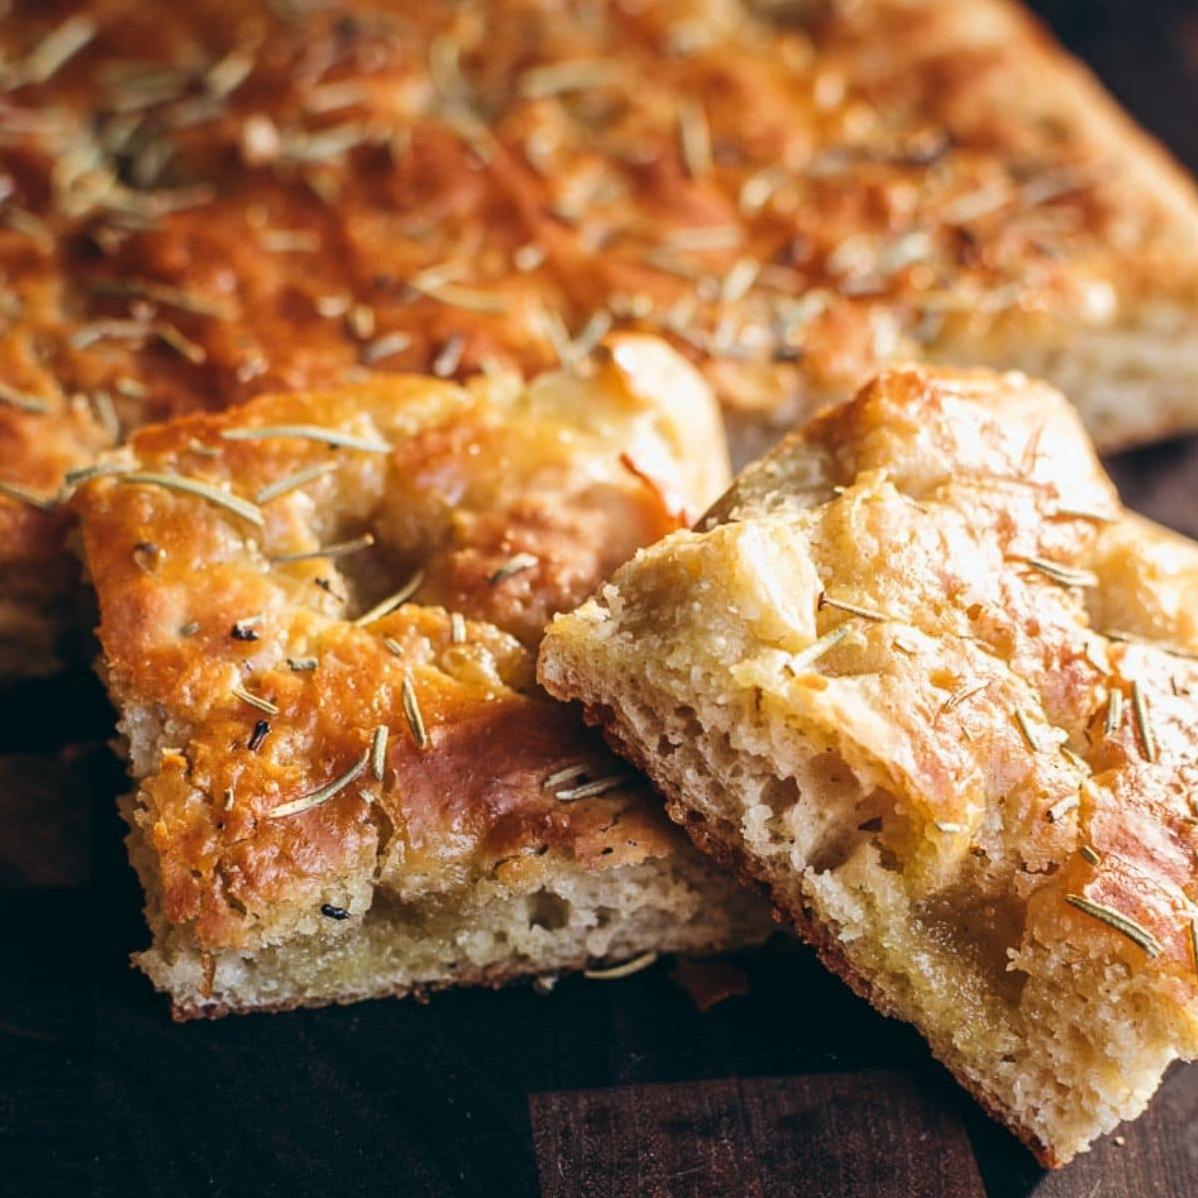  A slice of heaven: Gluten free focaccia bread